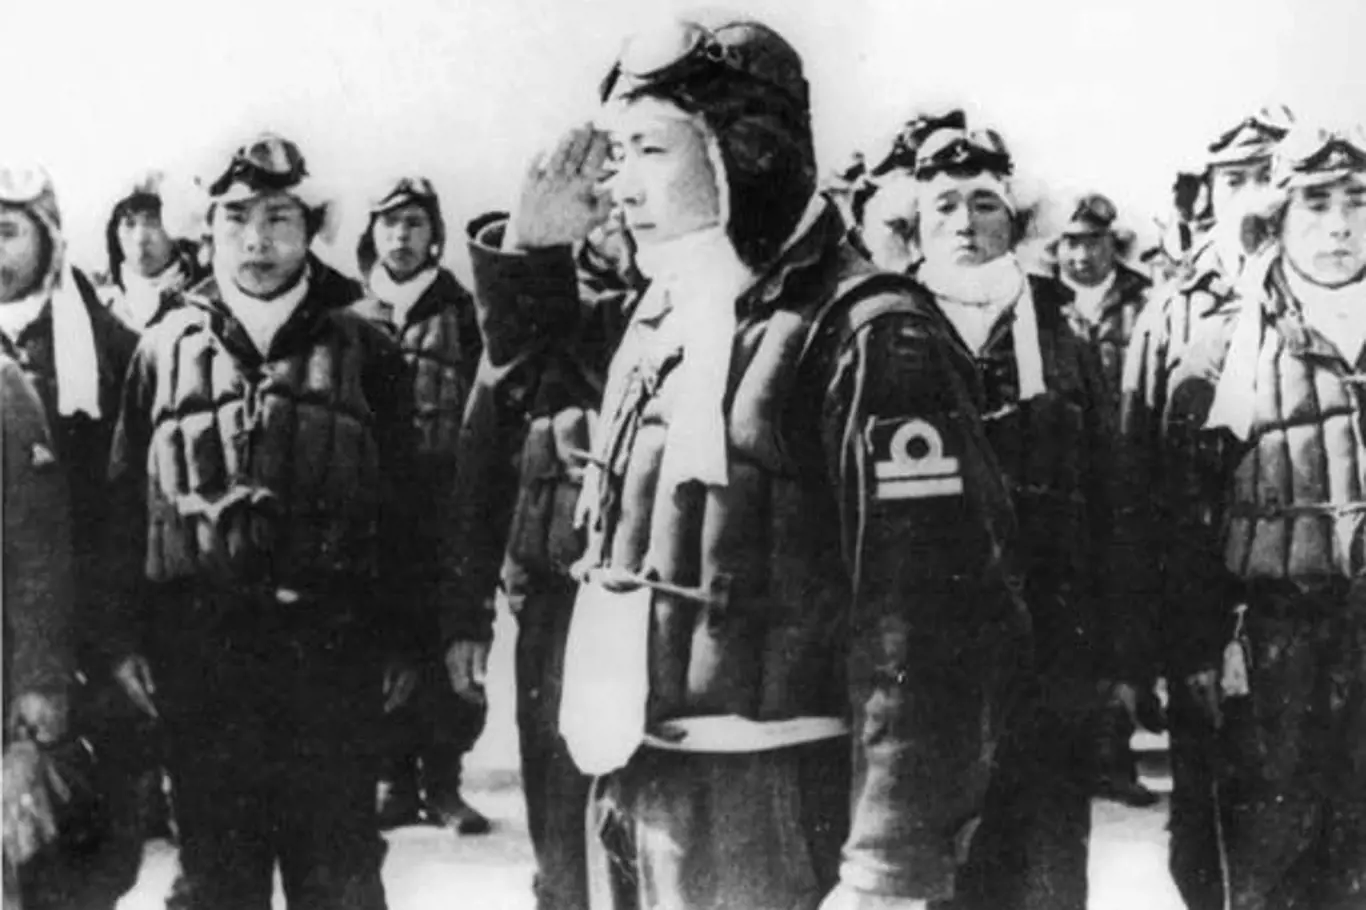 Piloti kamikaze zpočátku dobrovolníci, později byli mladí muži ke vstupu do sebevražedné jednotky vybízeni.